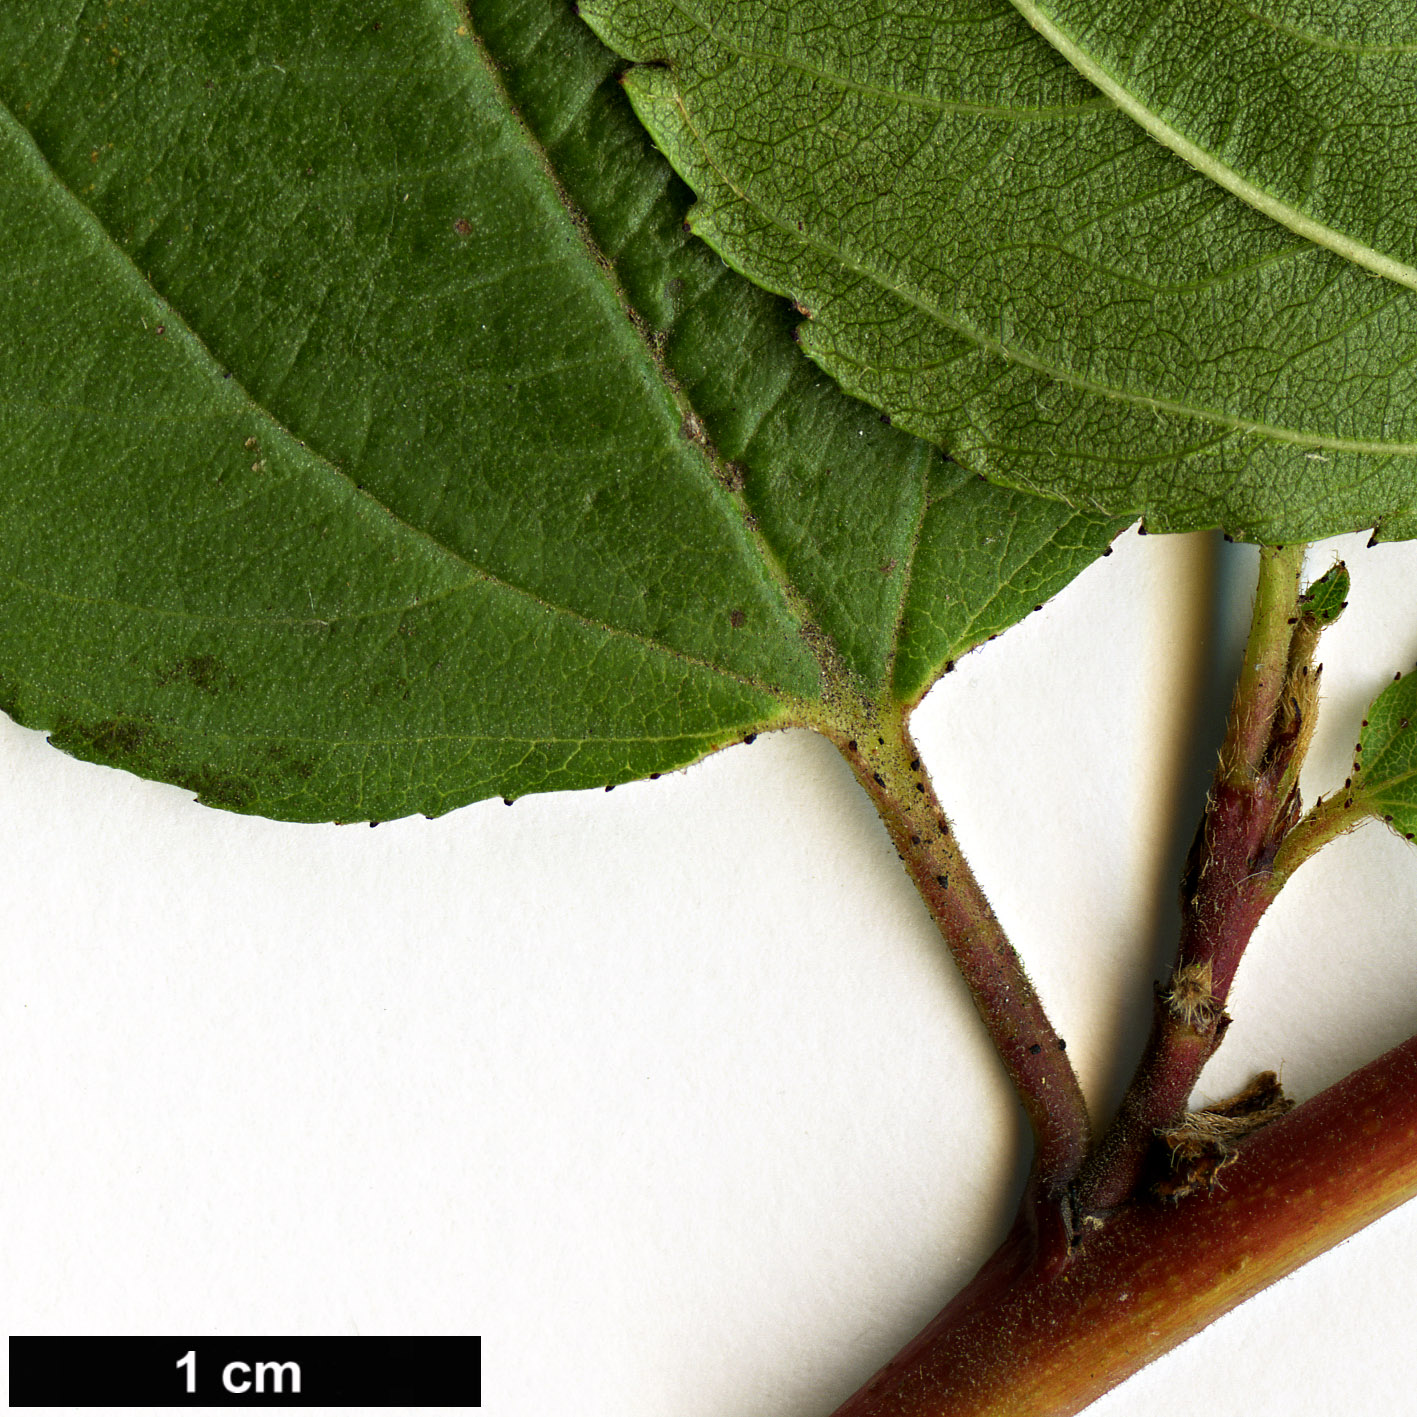 High resolution image: Family: Rhamnaceae - Genus: Ceanothus - Taxon: americanus